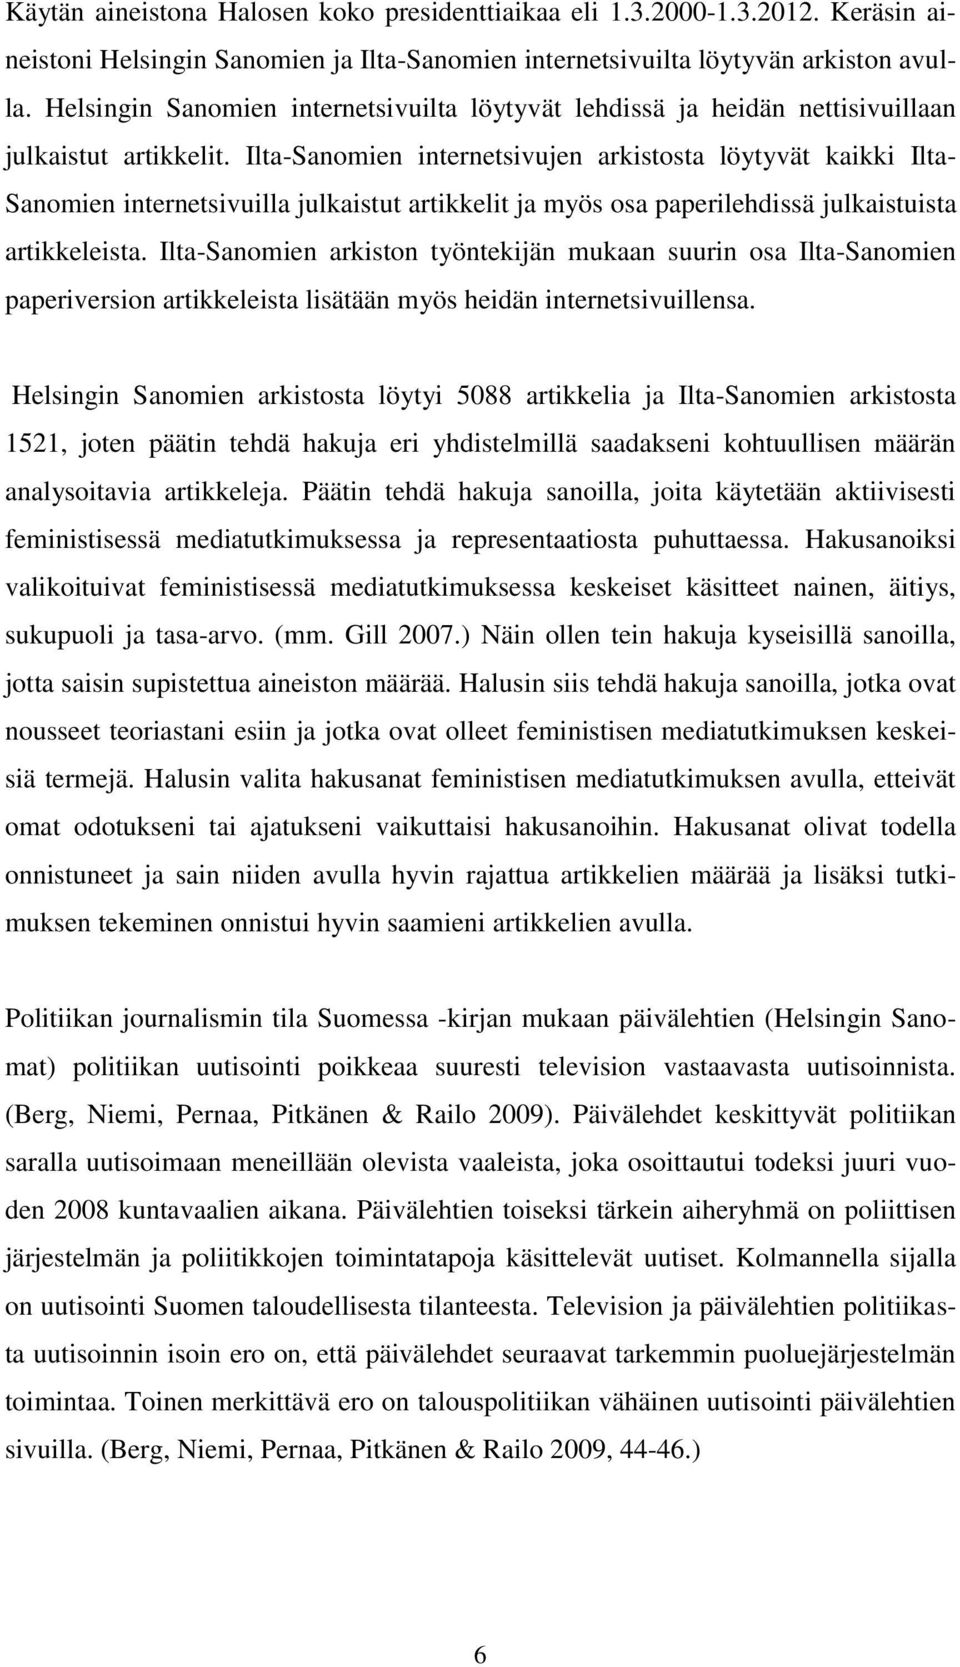 Ilta-Sanomien internetsivujen arkistosta löytyvät kaikki Ilta- Sanomien internetsivuilla julkaistut artikkelit ja myös osa paperilehdissä julkaistuista artikkeleista.